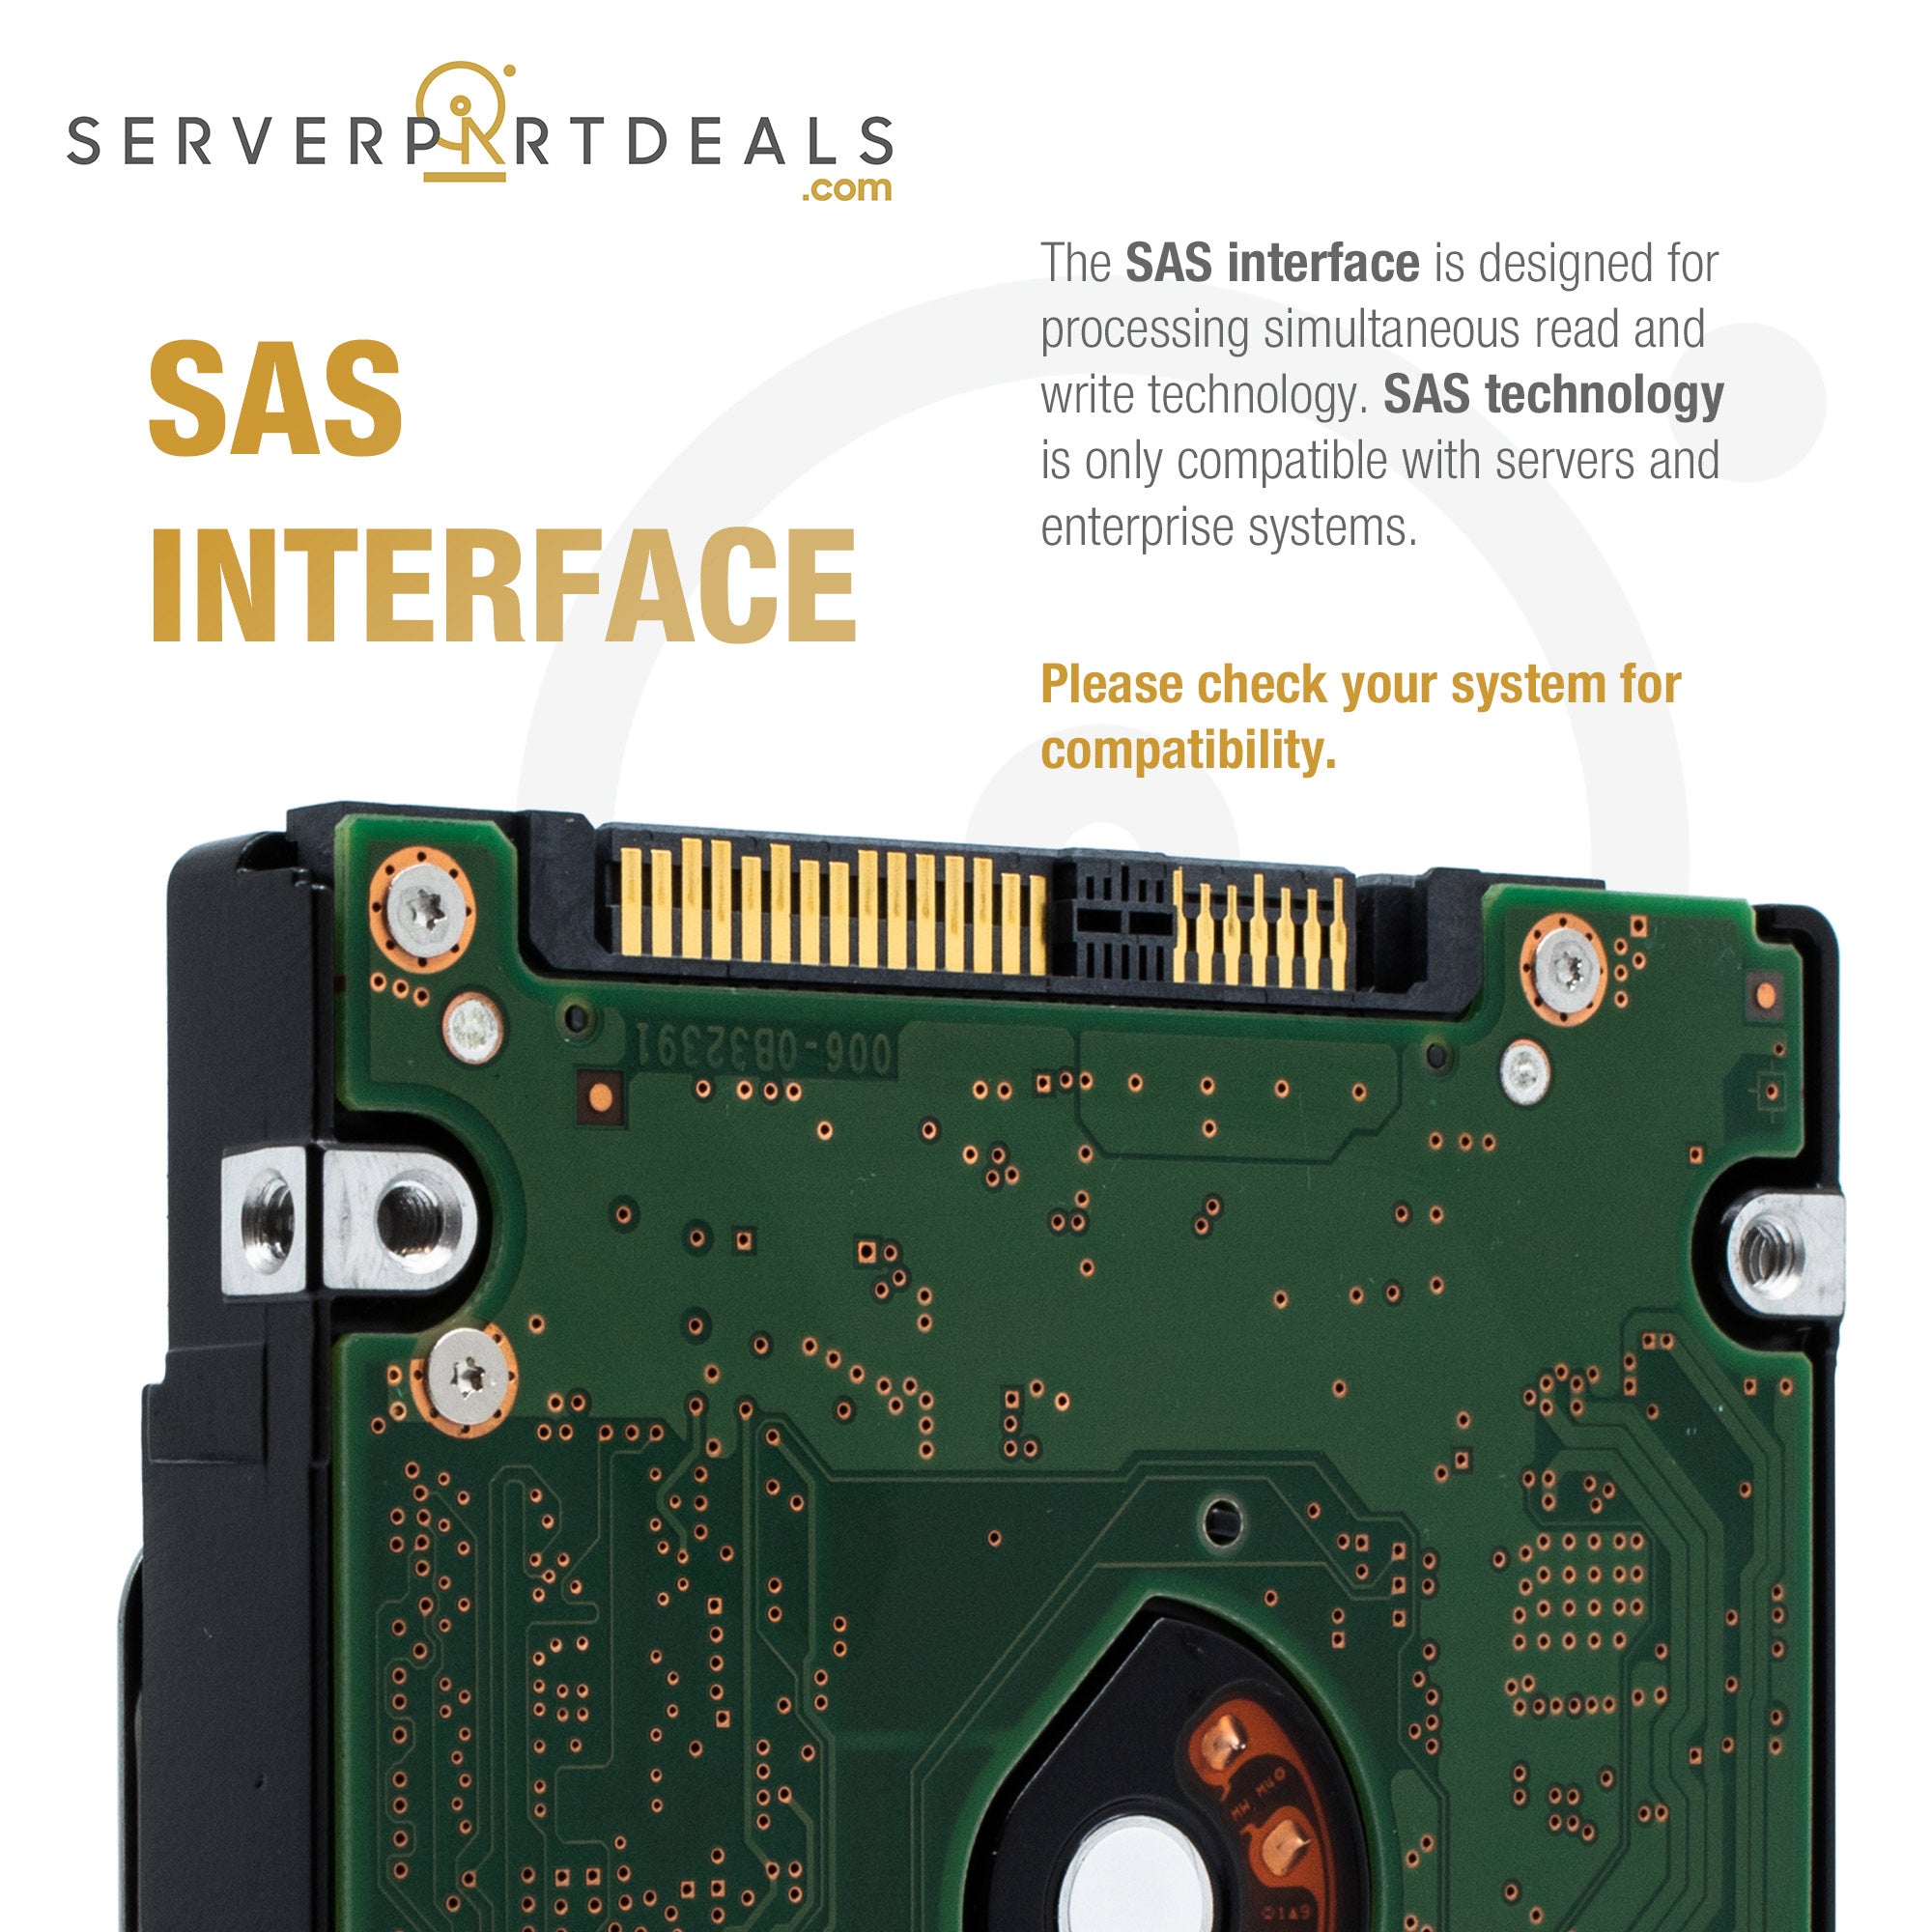 SAS Interface Description